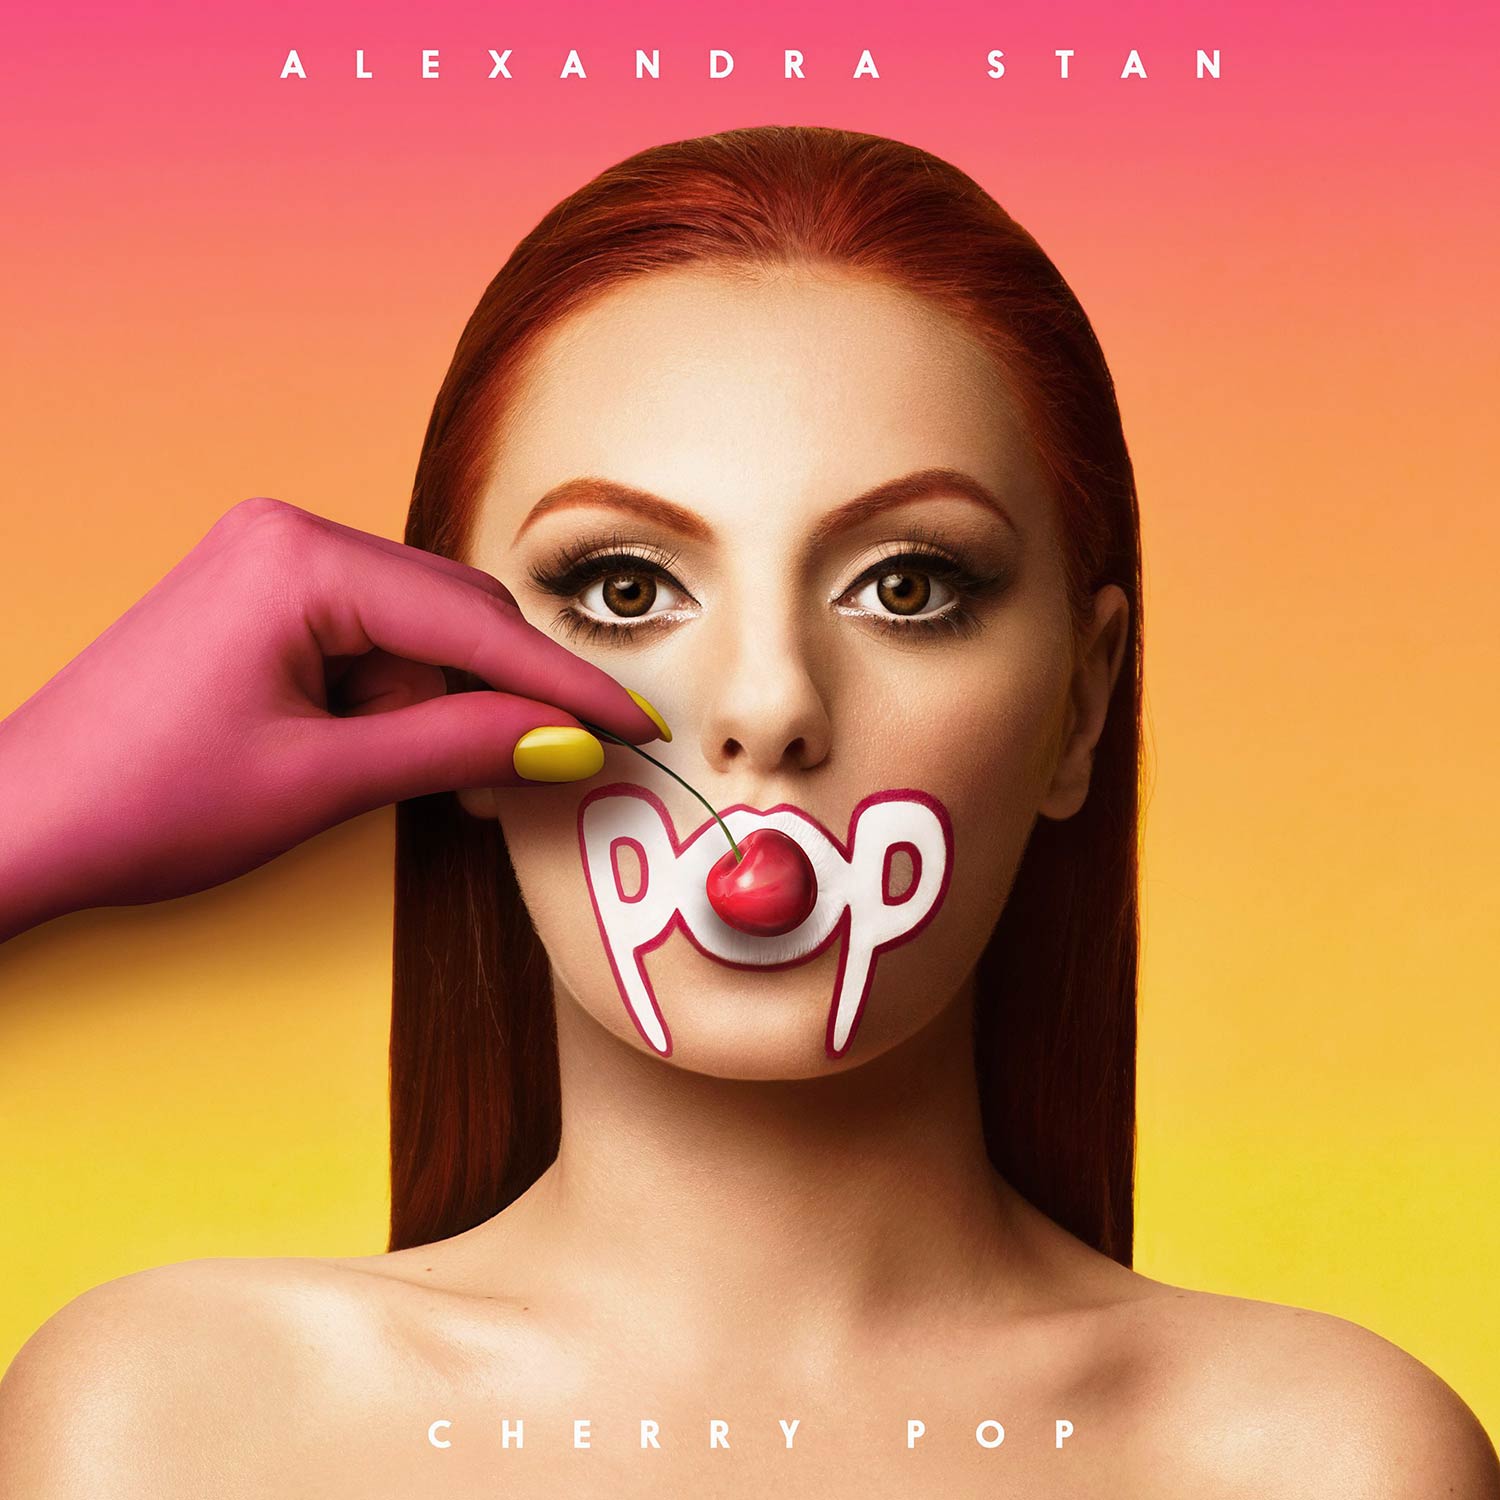 Alexandra Stan: Cherry pop, la portada de la canción